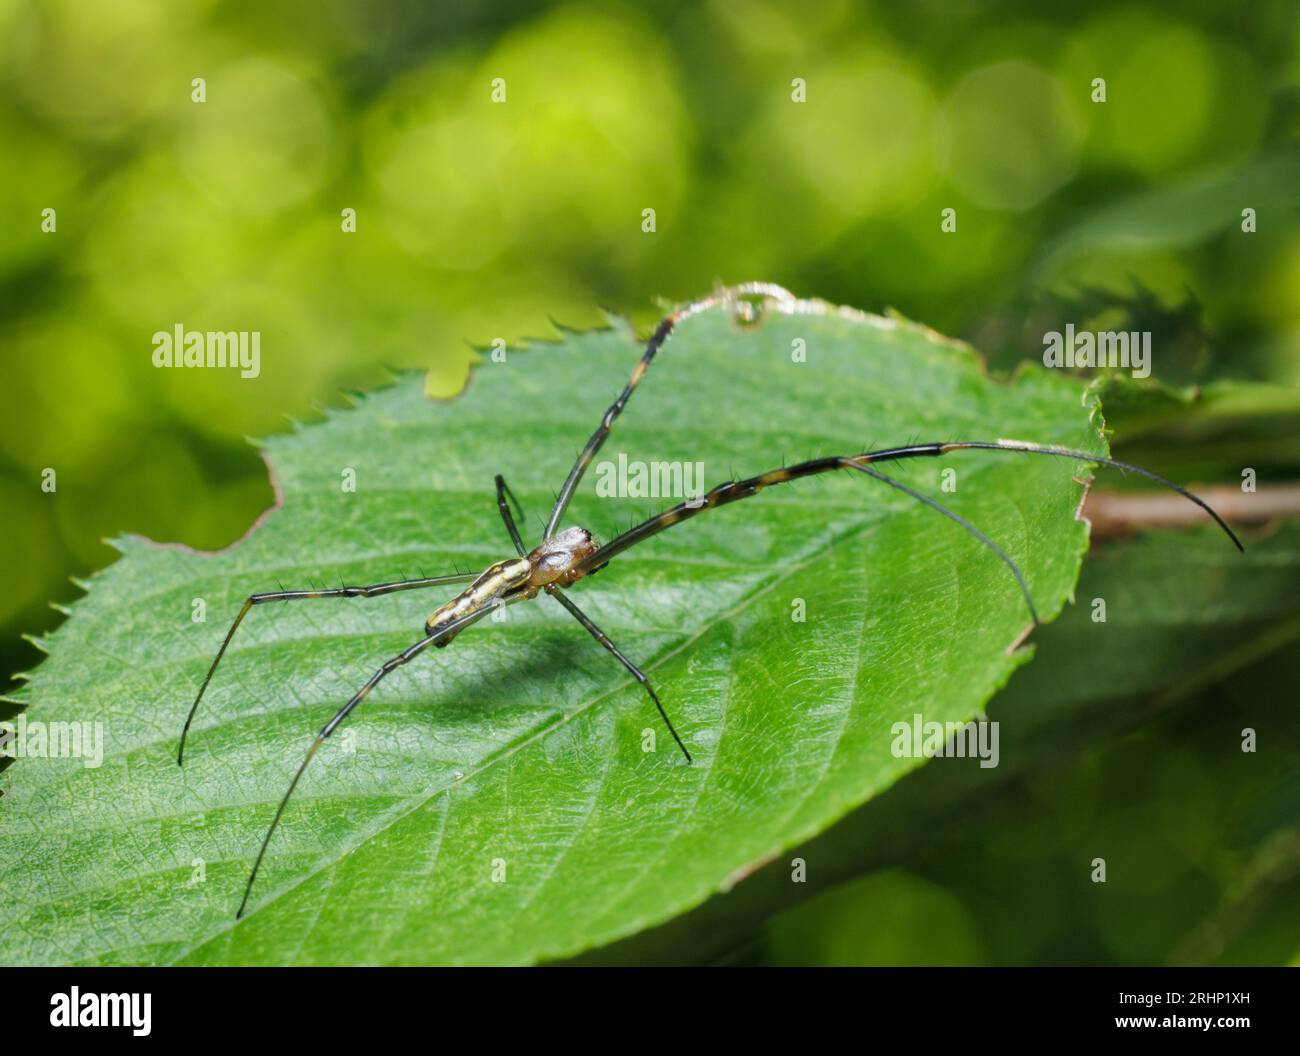 Araignée de Joro (Trichonephila clavata) - Comté de Hall, Géorgie. Une araignée joro femelle pose sa revendication sur la feuille d'un cerisier. Banque D'Images